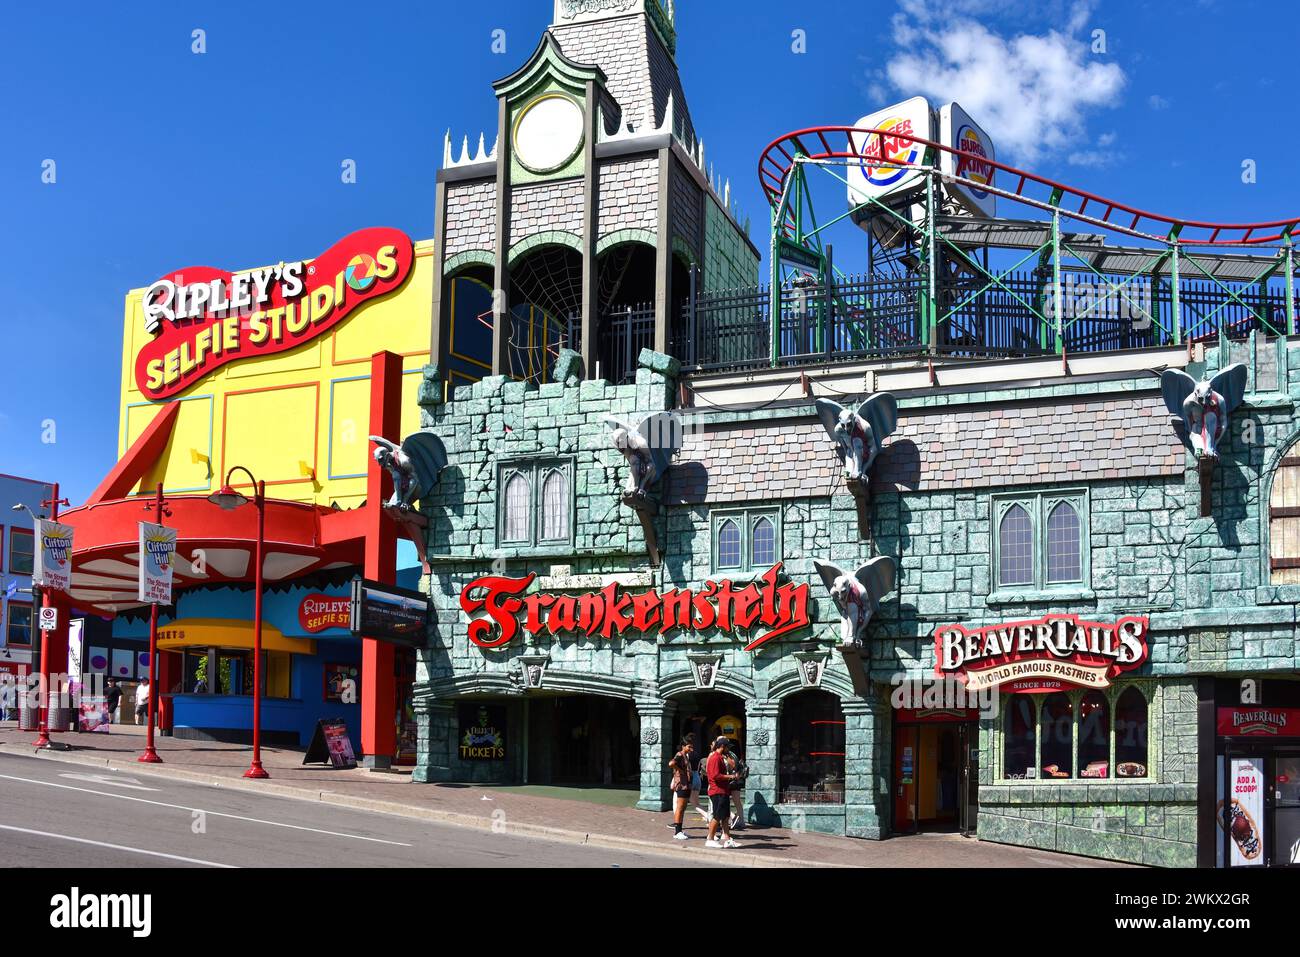 Niagara Falls, Kanada - 13. August 2022: Ripley's Selfie Studio, das Haus Frankenstein mit Achterbahnfahrt, Beaver Tails und Burger King auf Cl Stockfoto